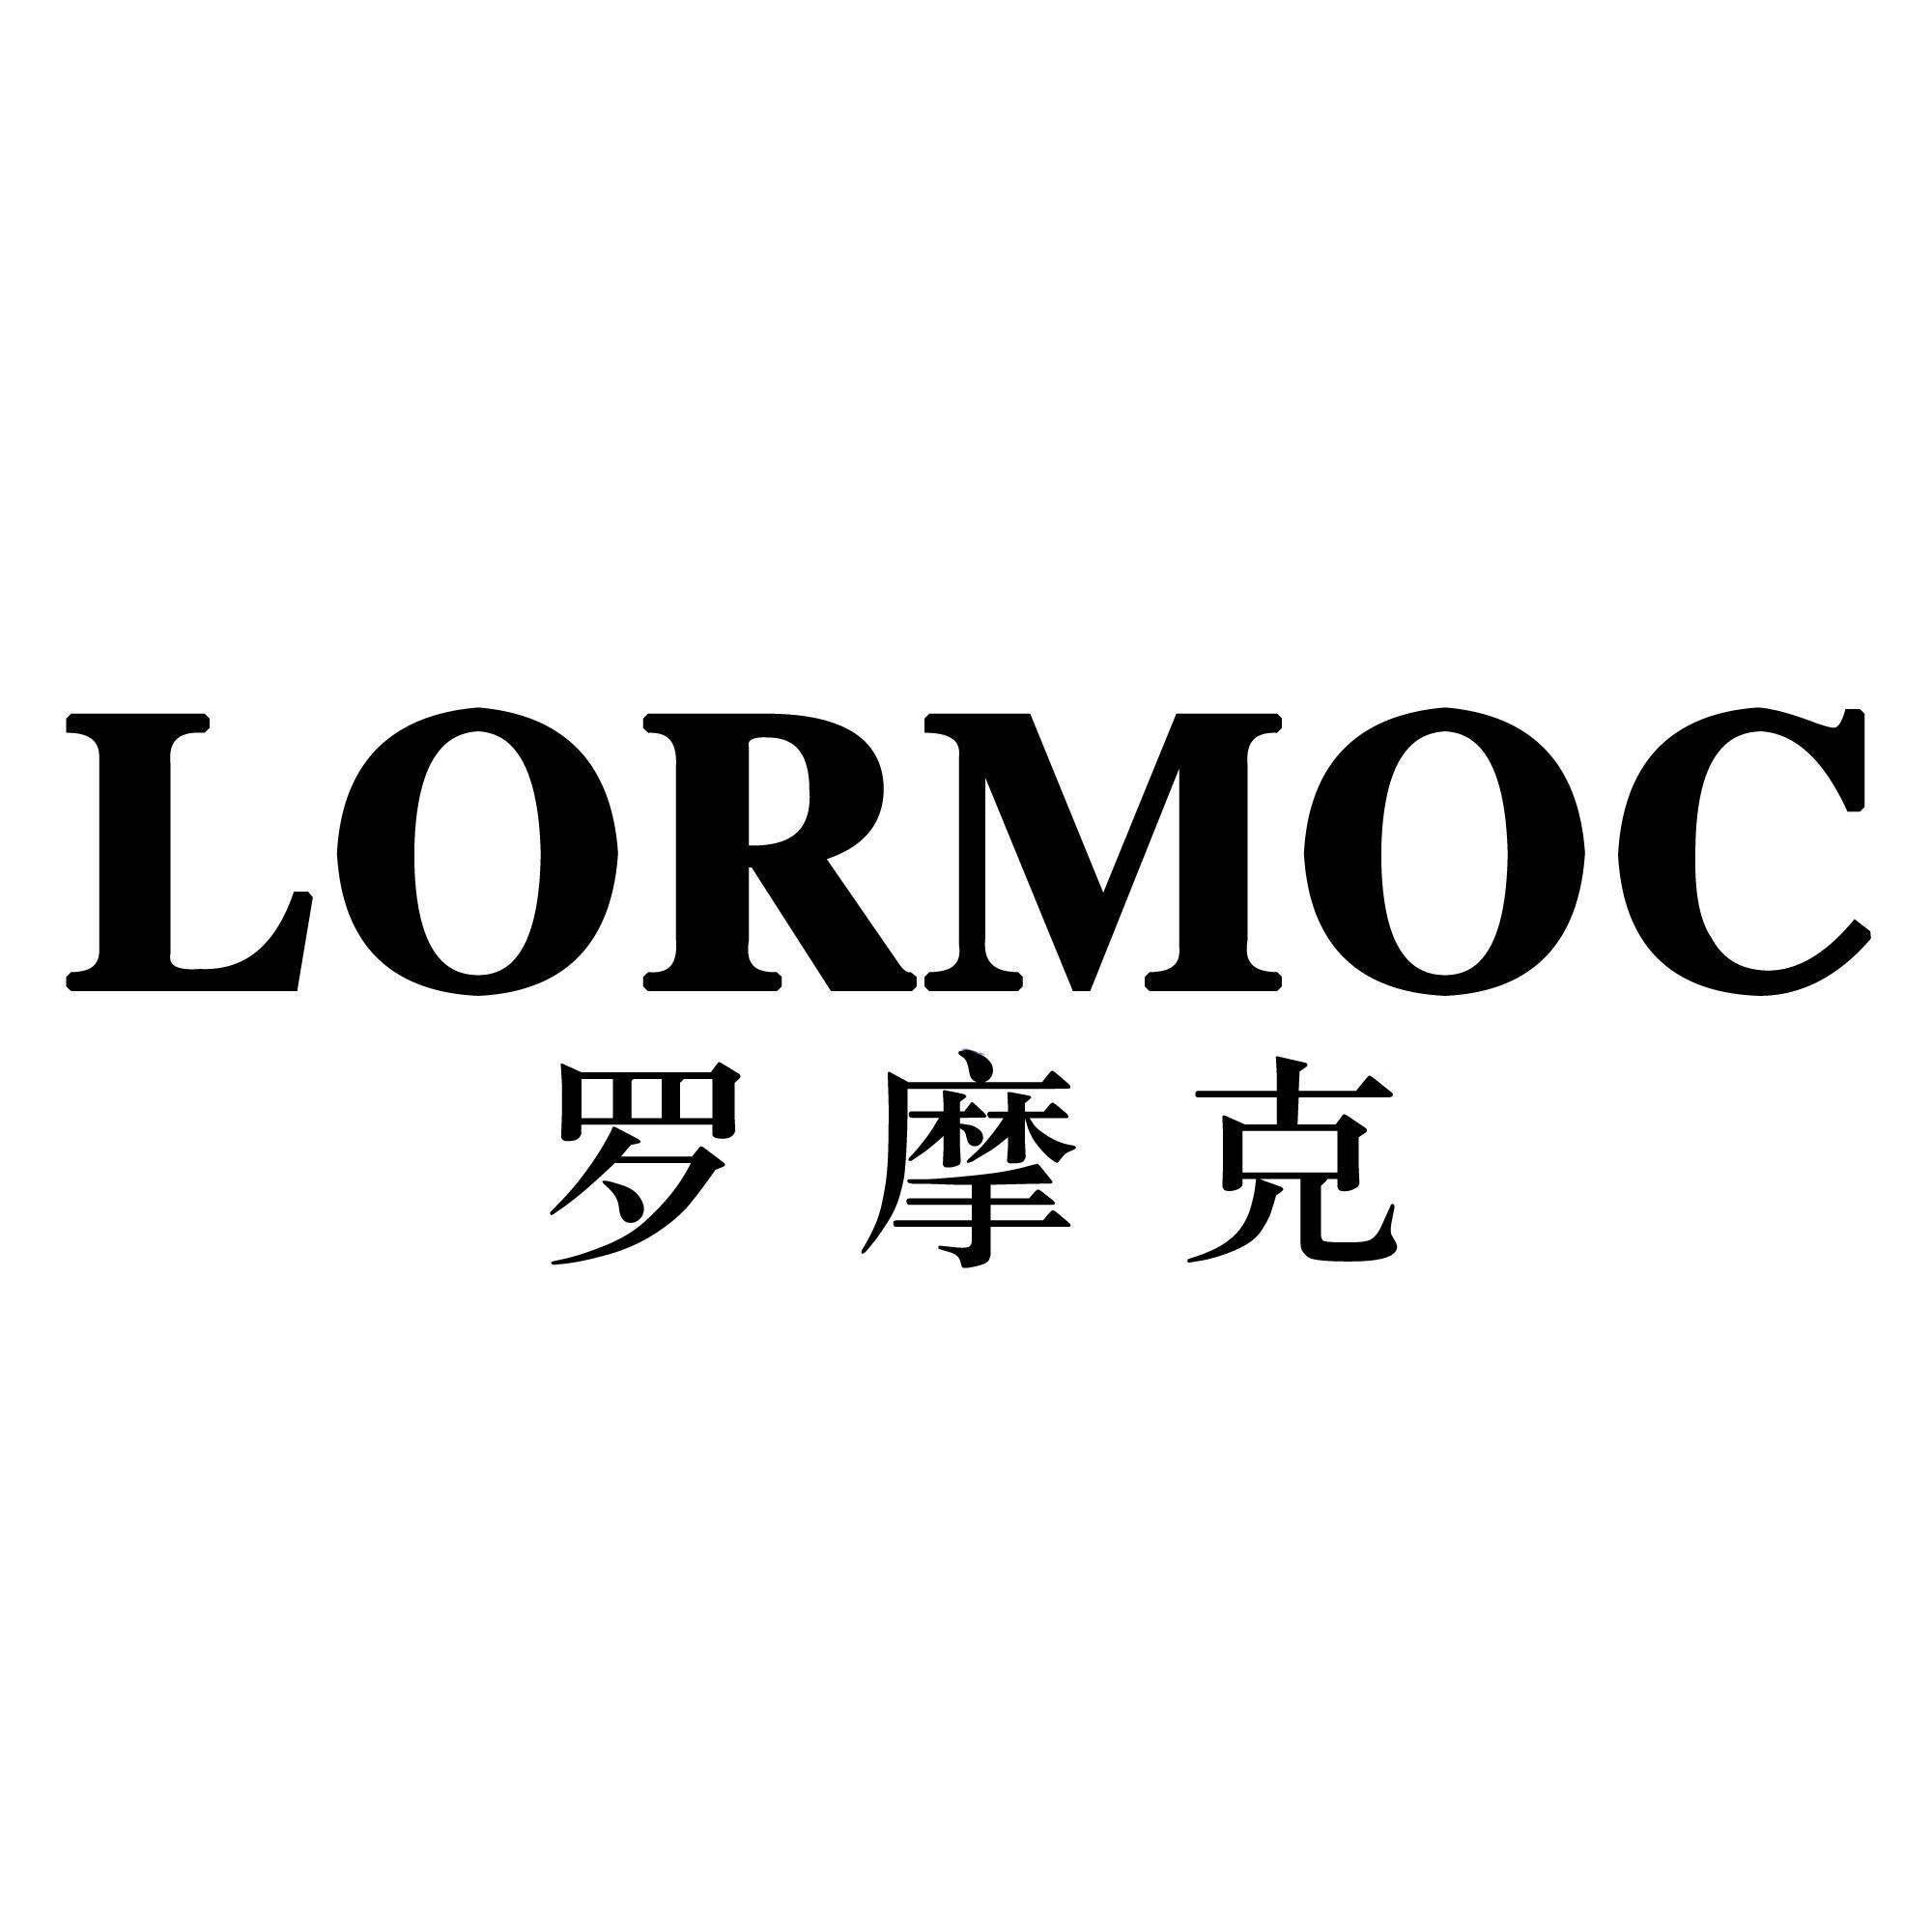 LORMOC 罗摩克